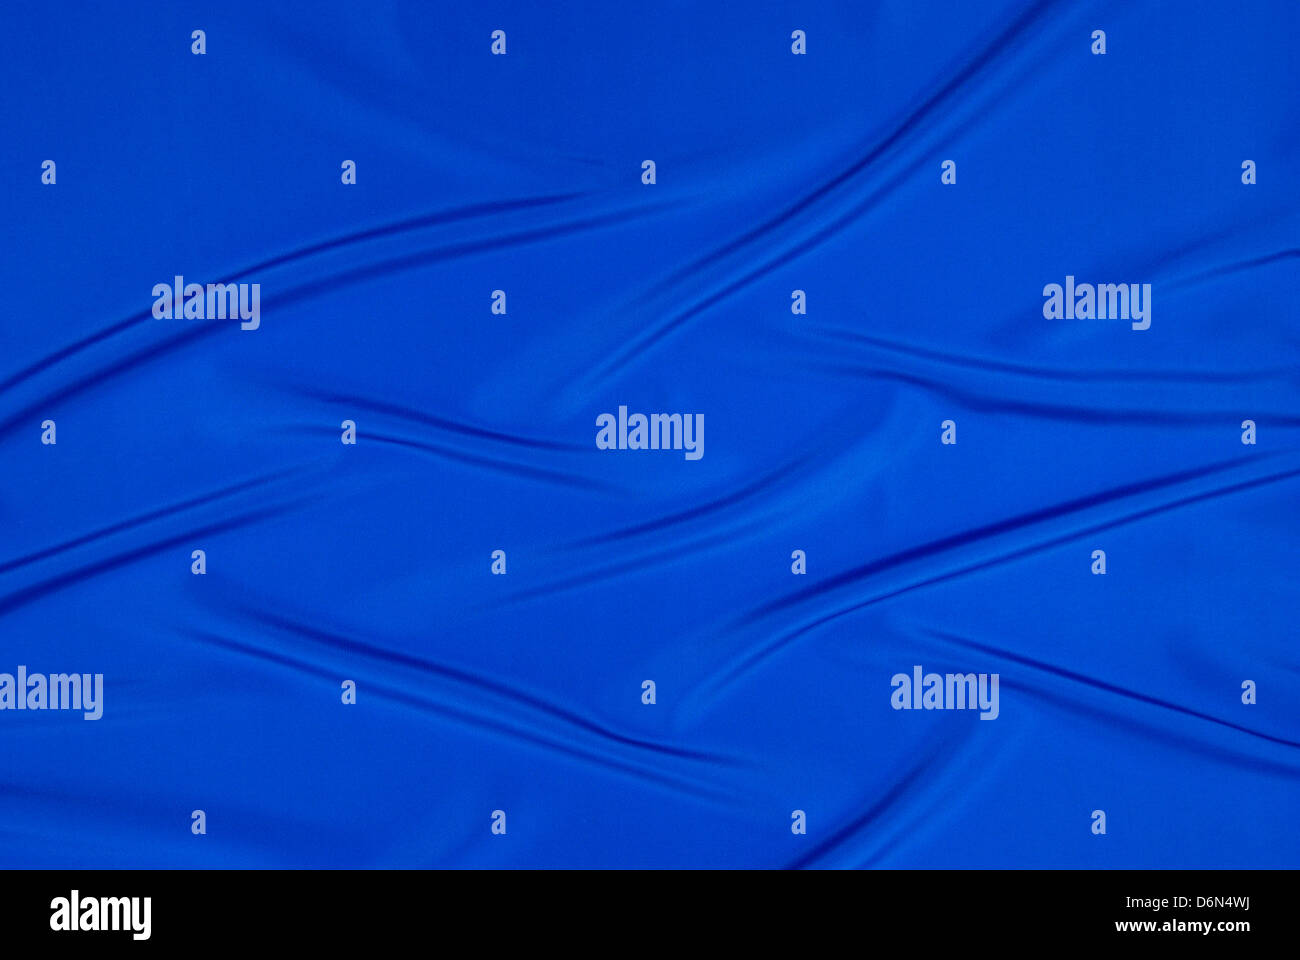 Blau und seidigen Stoff als Hintergrund angeordnet Stockfoto